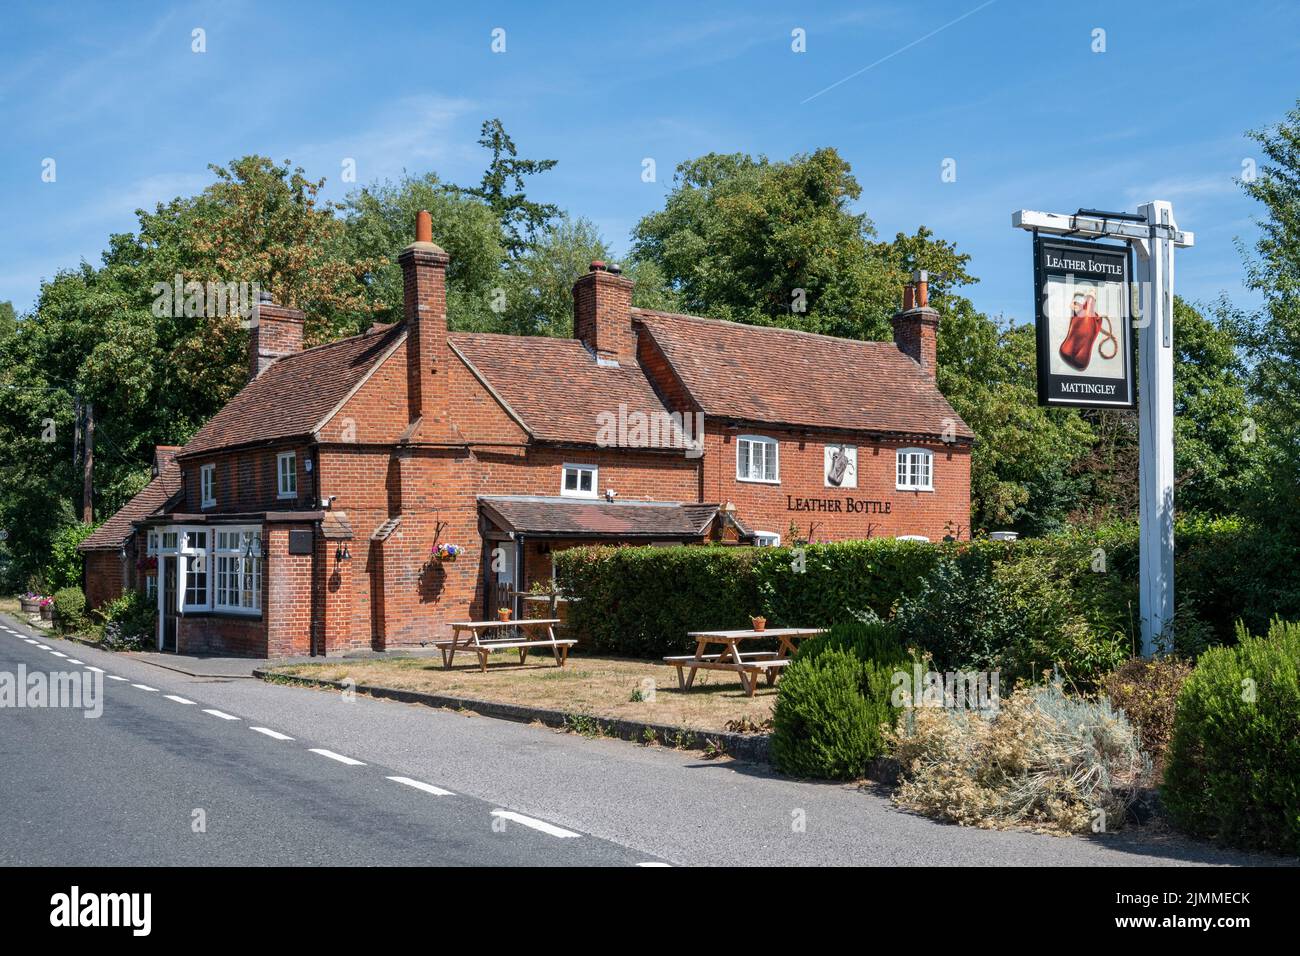 The Leather Bottle pub à Mattingley, Hampshire, Angleterre, Royaume-Uni, une ancienne auberge de village. Banque D'Images